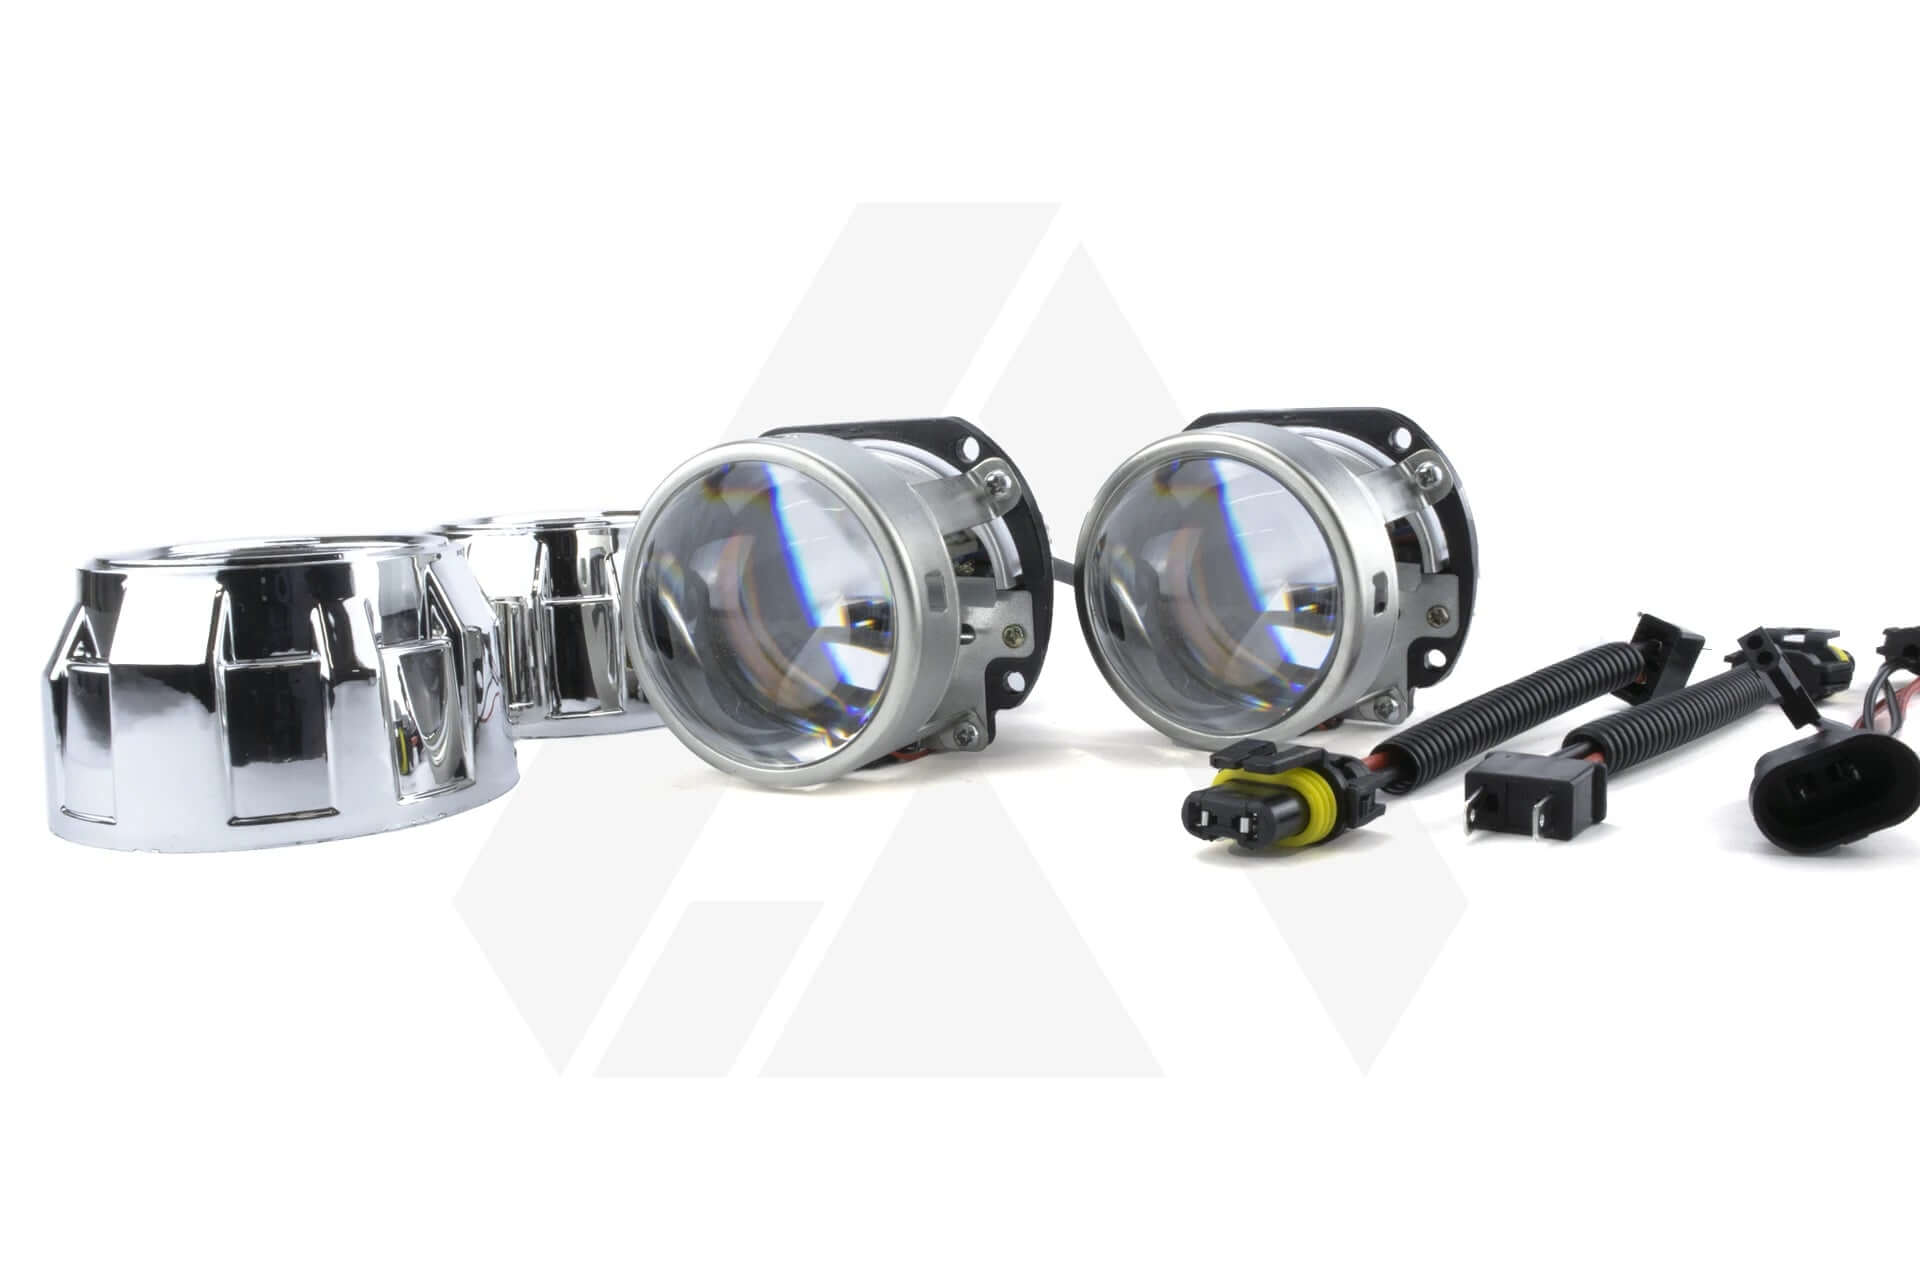 Opel Zafira B 05-14 Bi-LED projector light upgrade retrofit kit